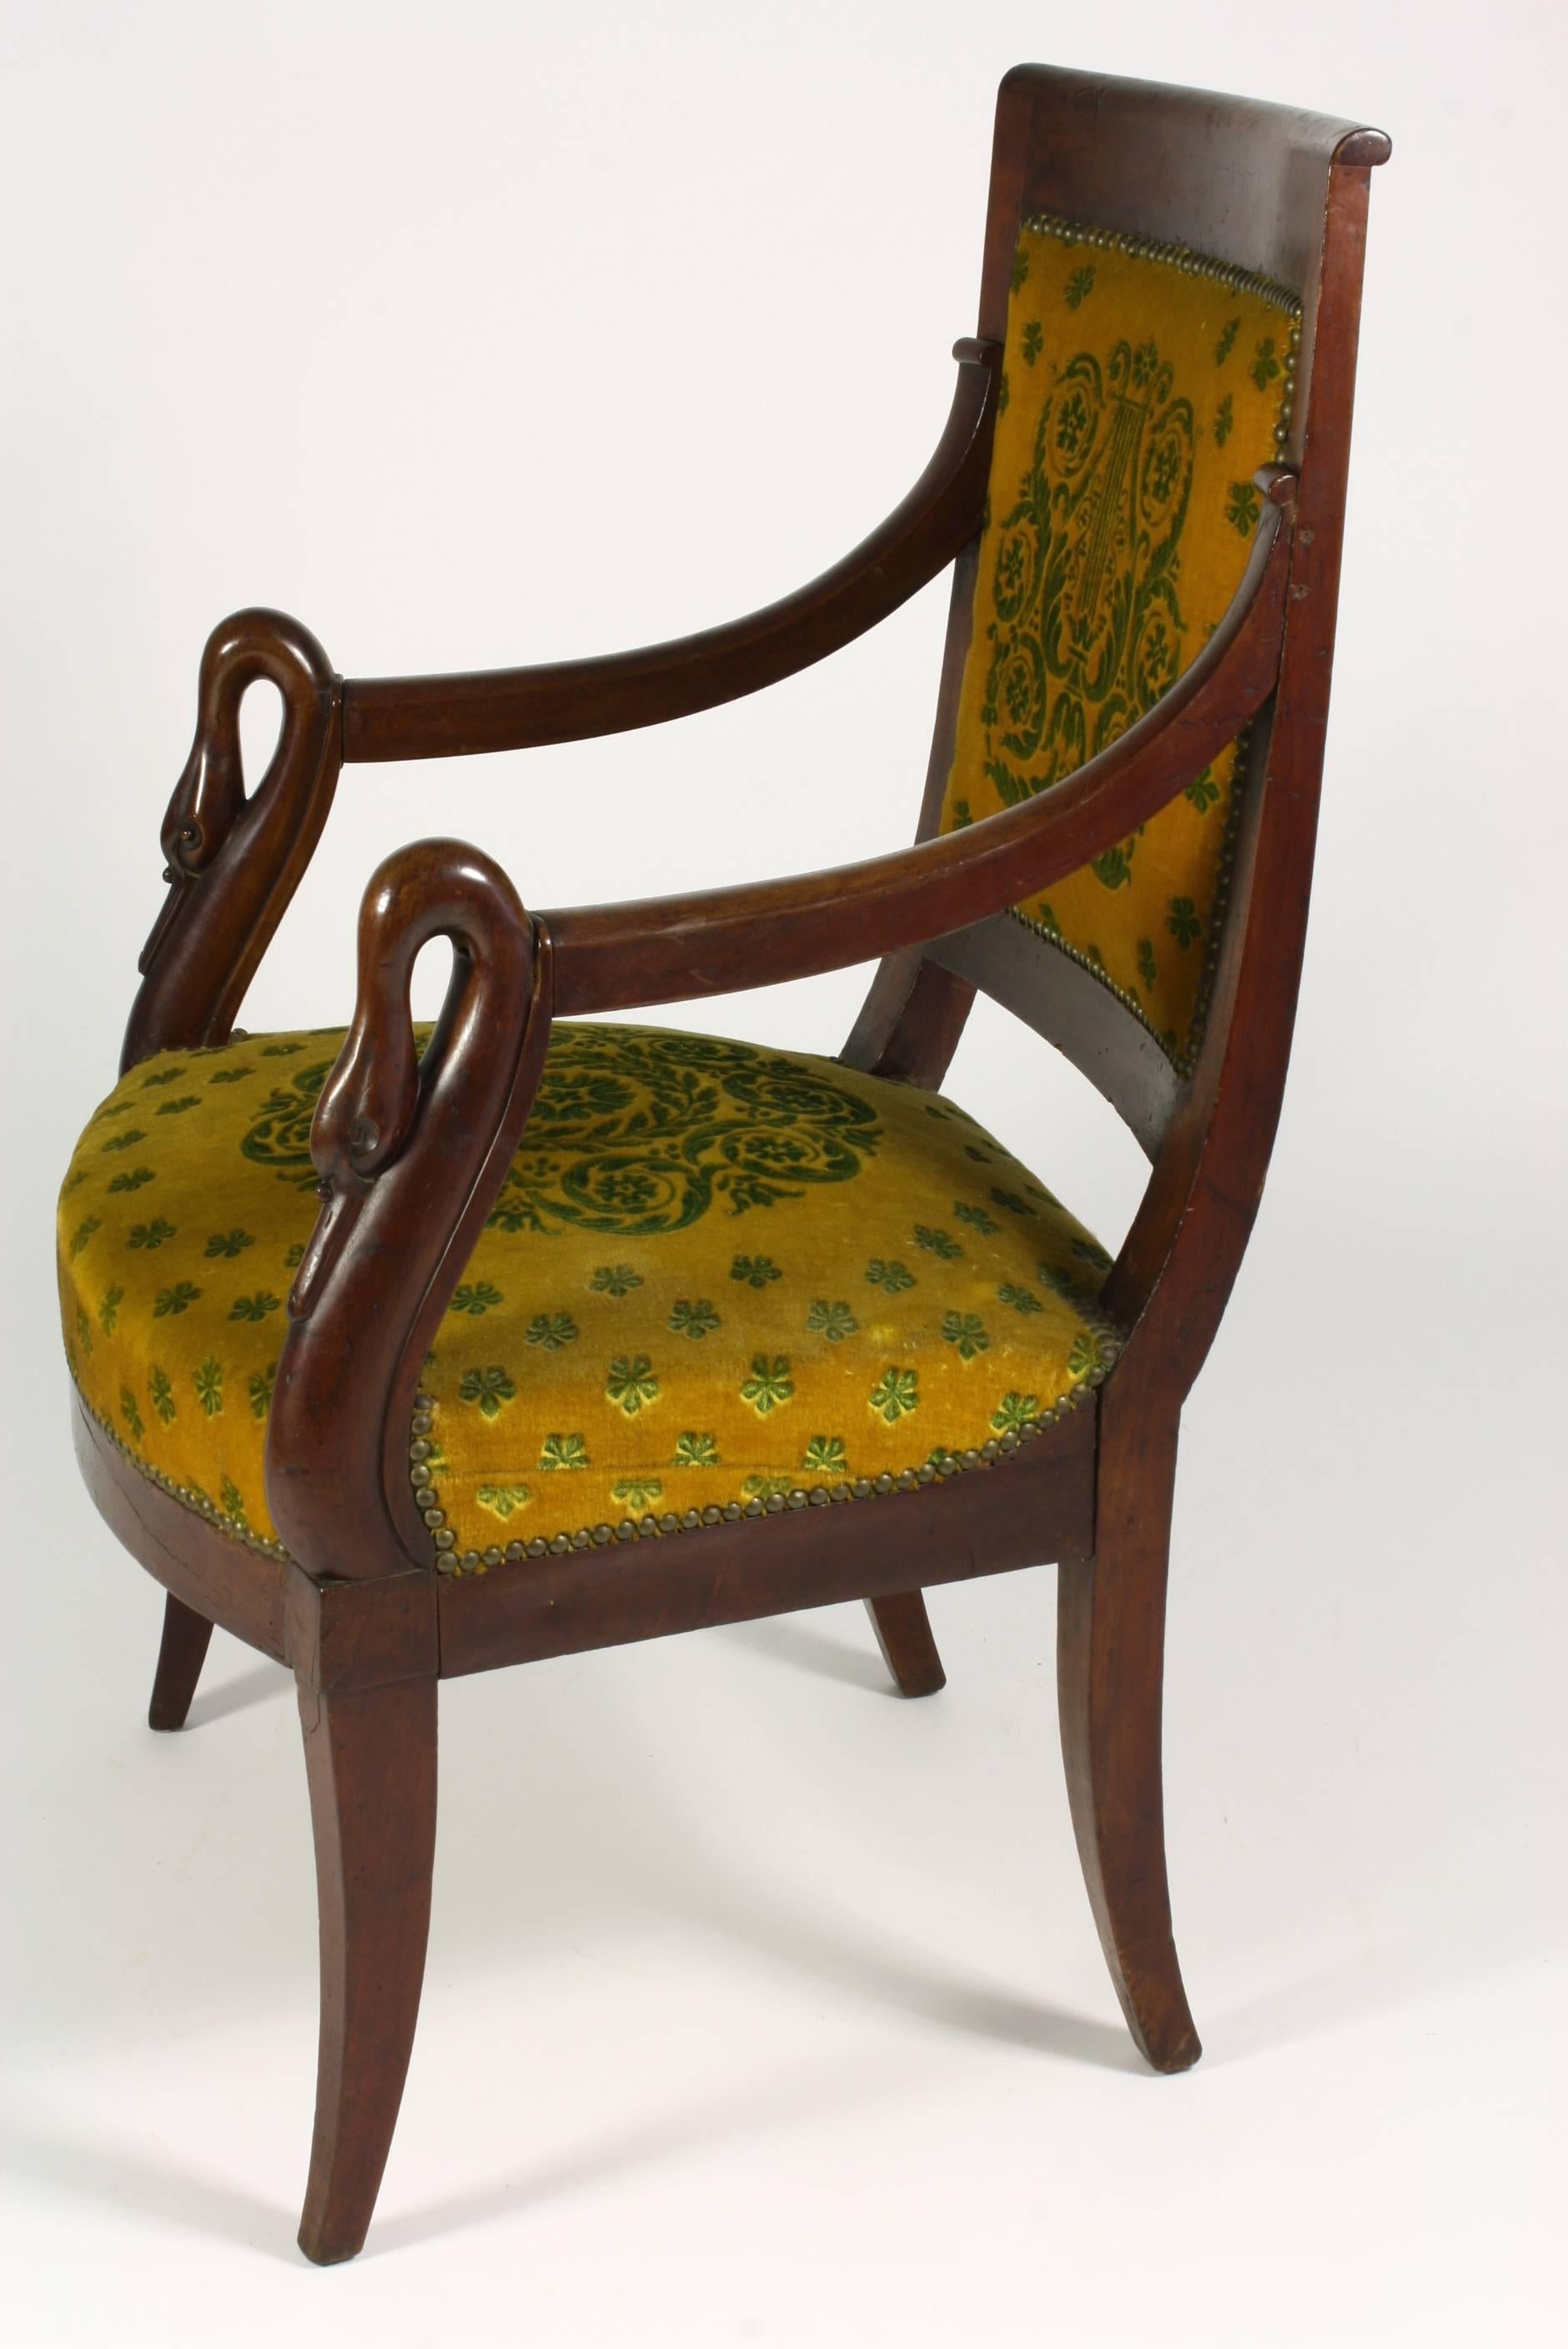 Französischer Fauteuil oder Sessel aus Mahagoni der Empirezeit mit Säbelbeinen und Schwanenköpfen an den Armlehnen.  Der Stuhl ist mit neoklassisch gemustertem Mohair-Stoff gepolstert.